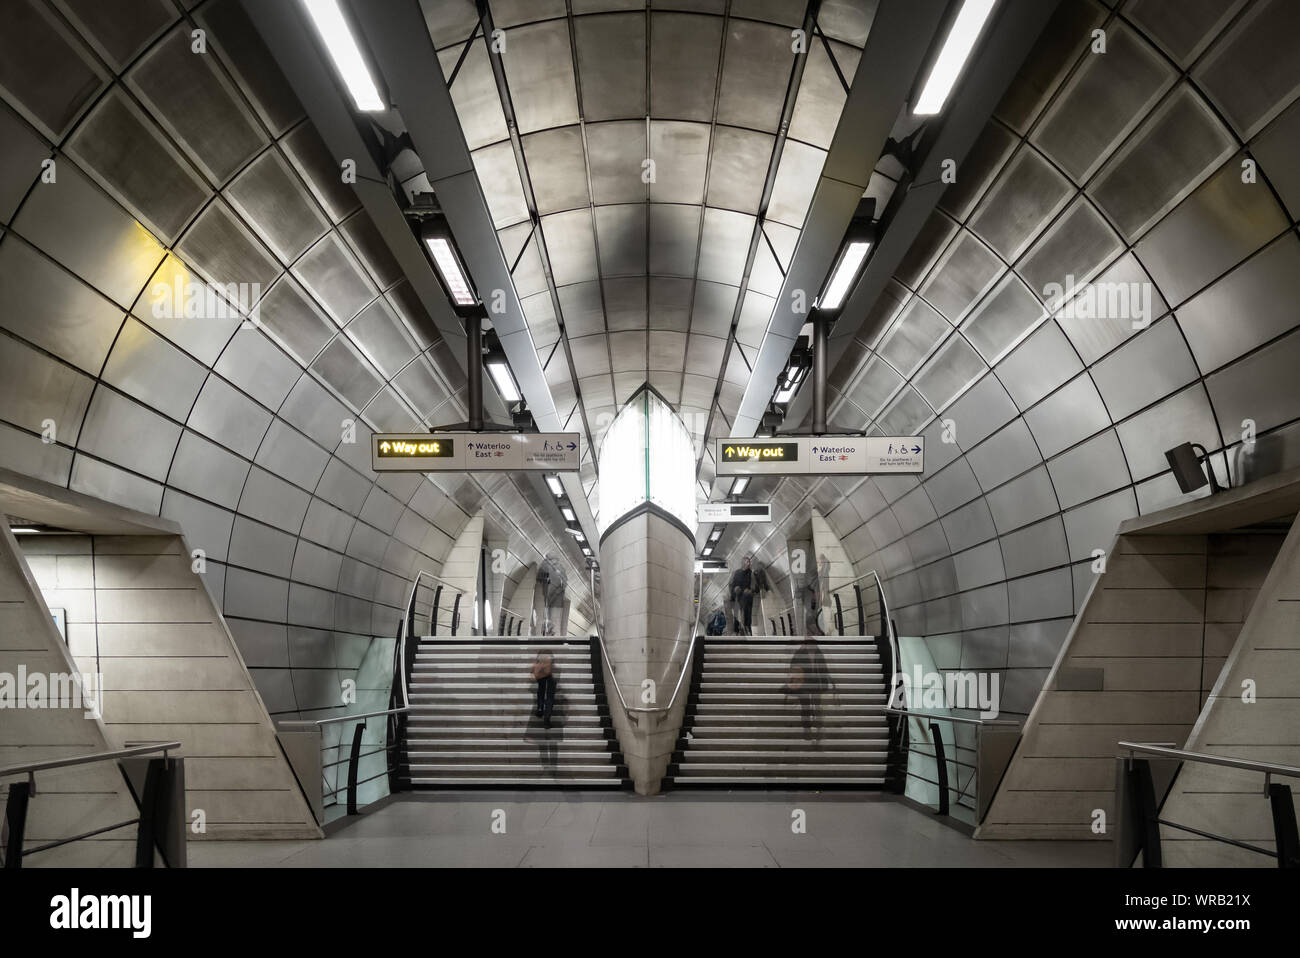 London, Regno Unito - 1 febbraio 2019. Il concourse intermedio della stazione metropolitana di Southwark. Foto Stock